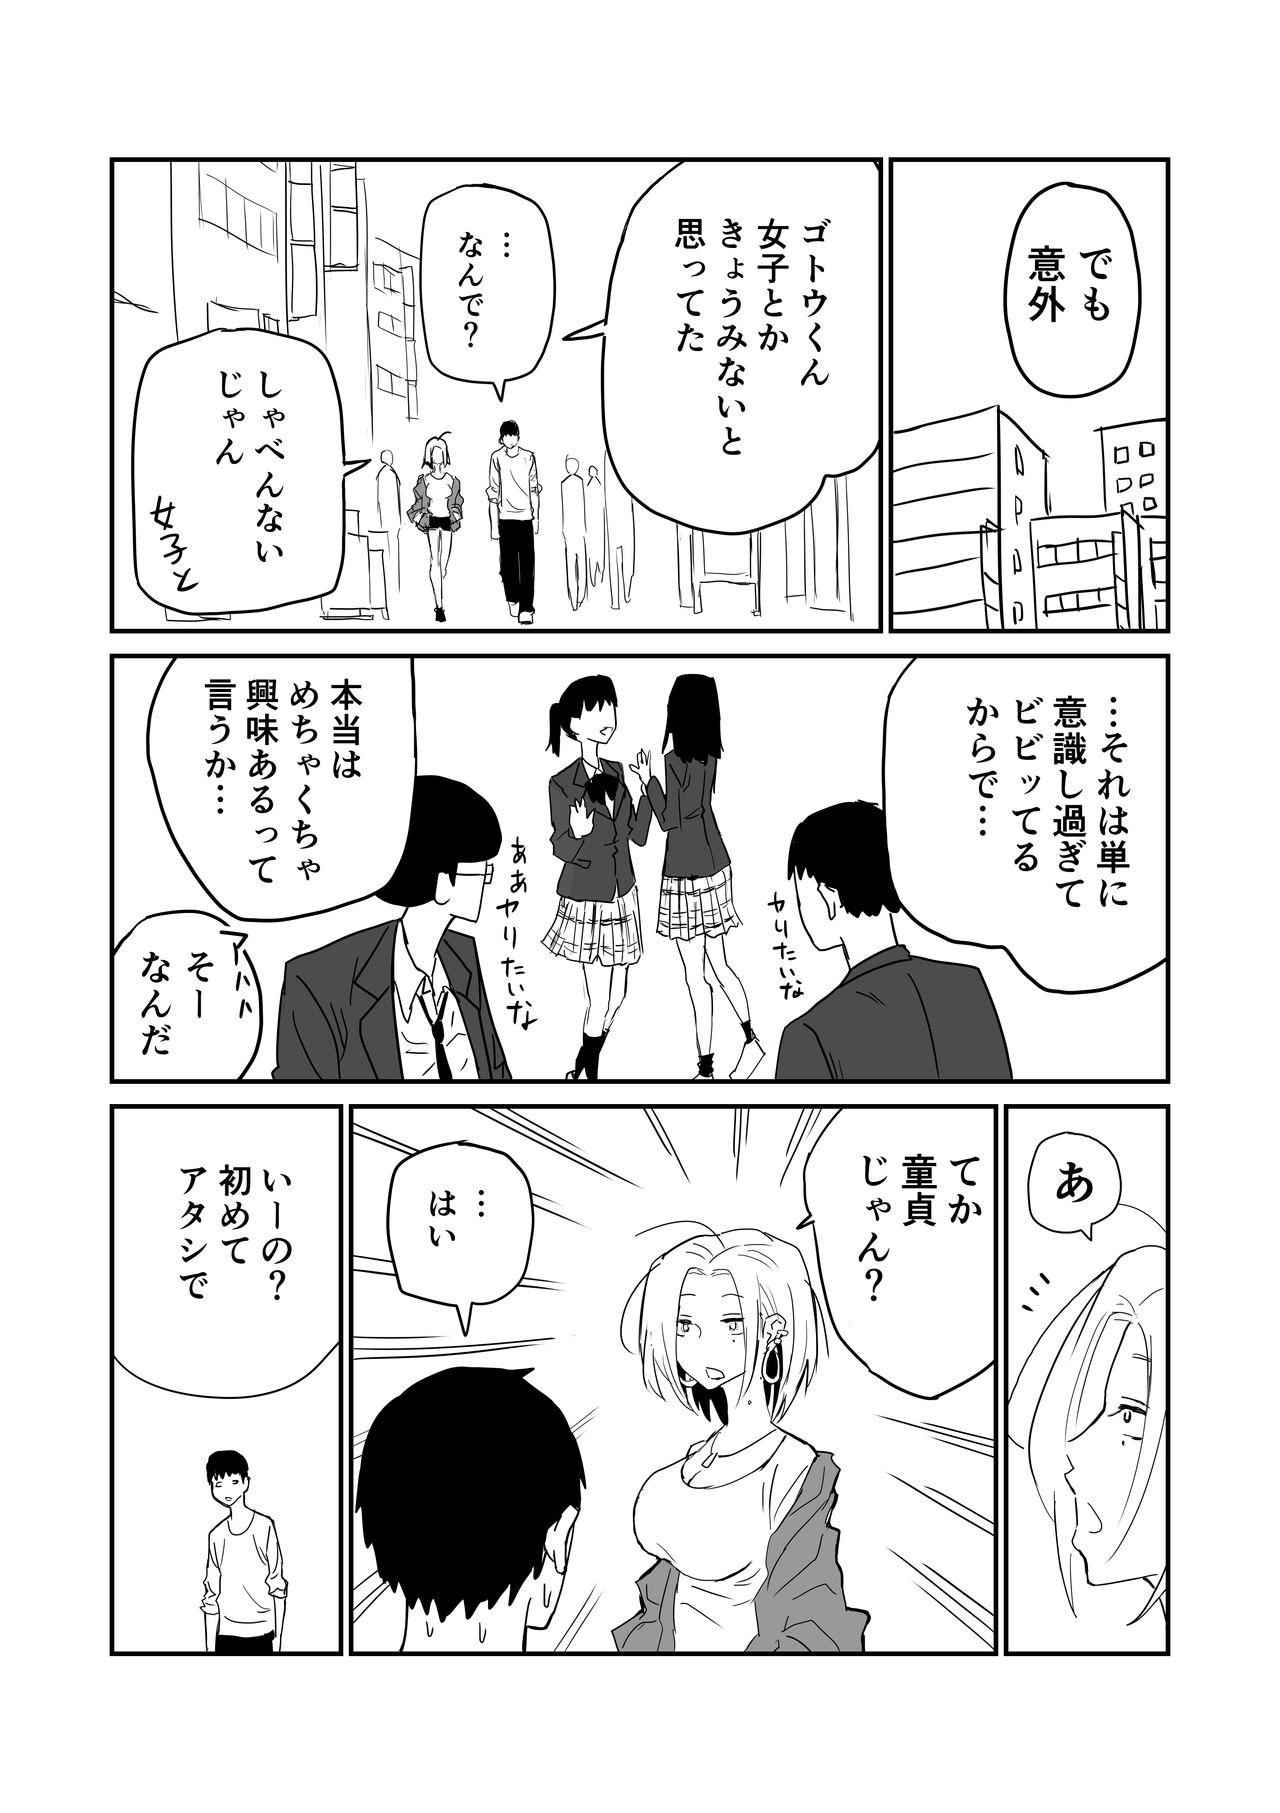 女子高生のエロ漫画 54